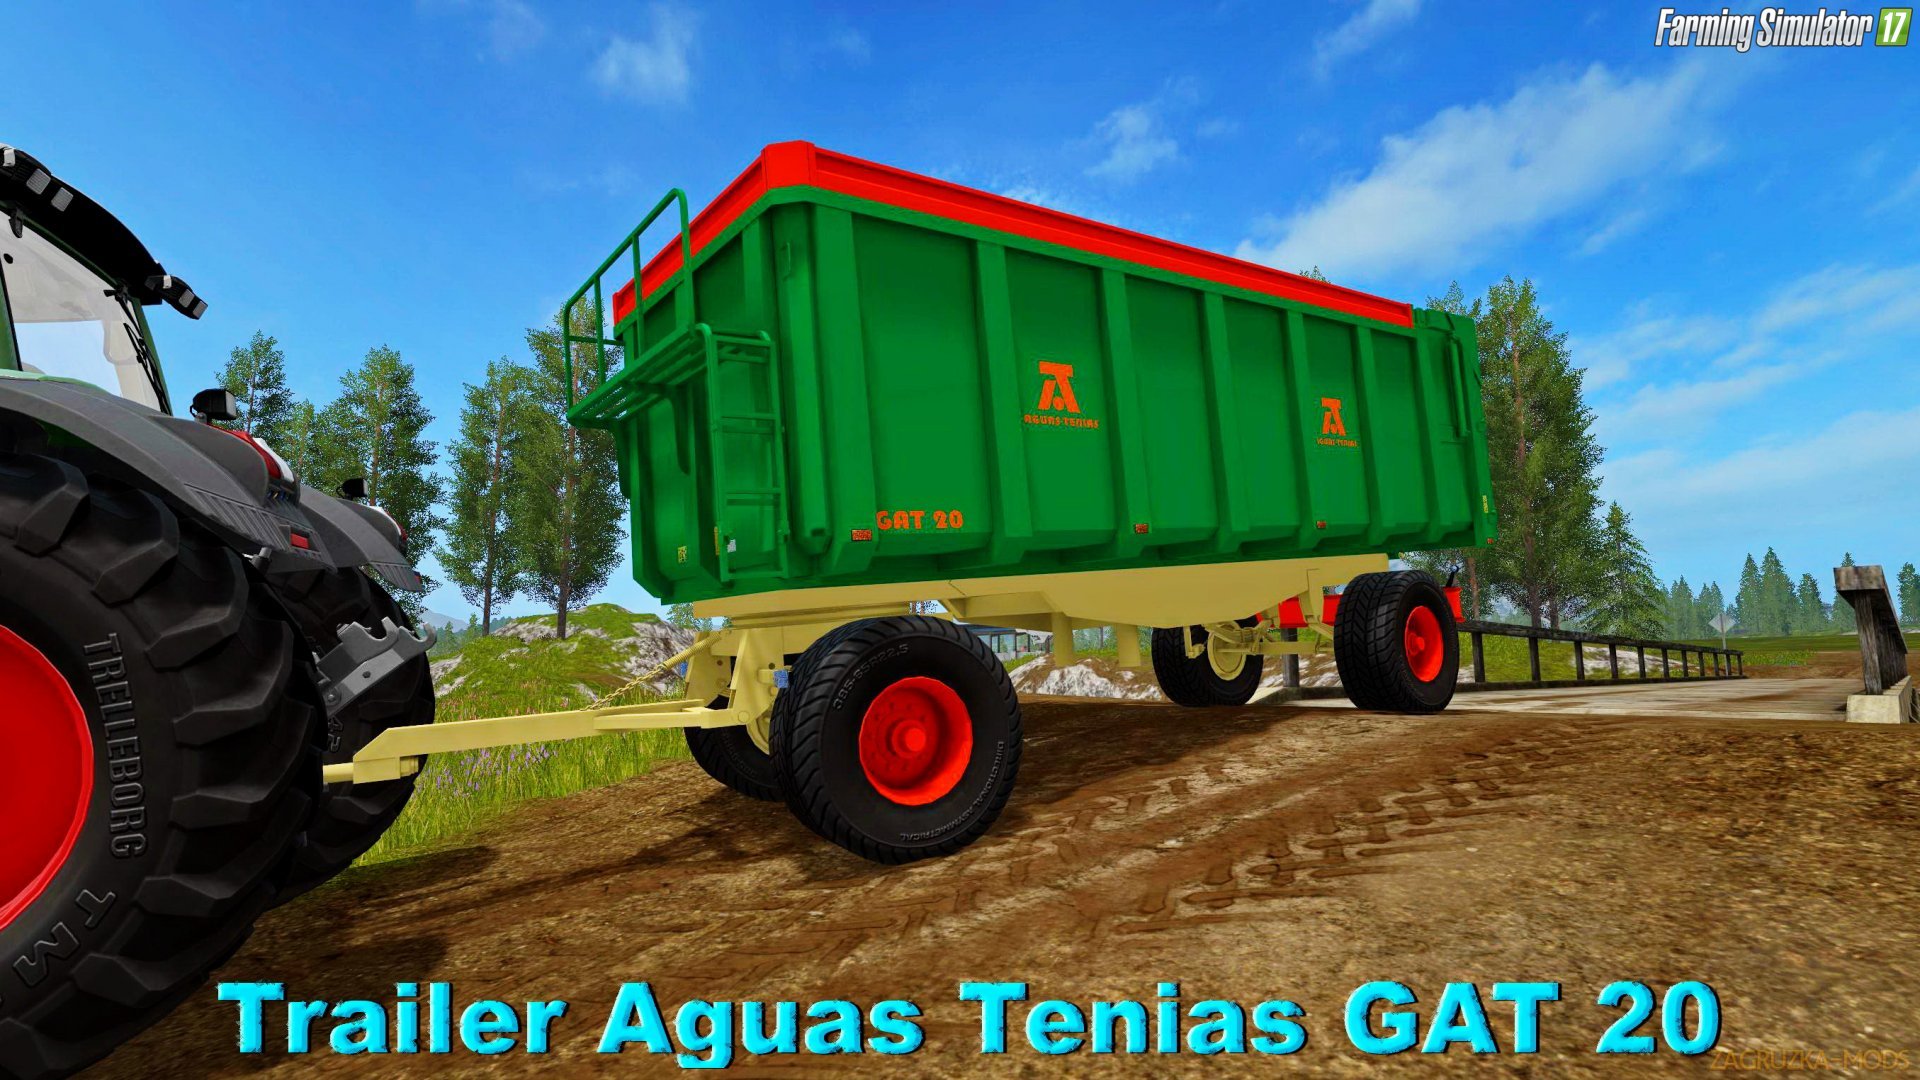 Aguas Tenias GAT 20 v1.0 for FS 17